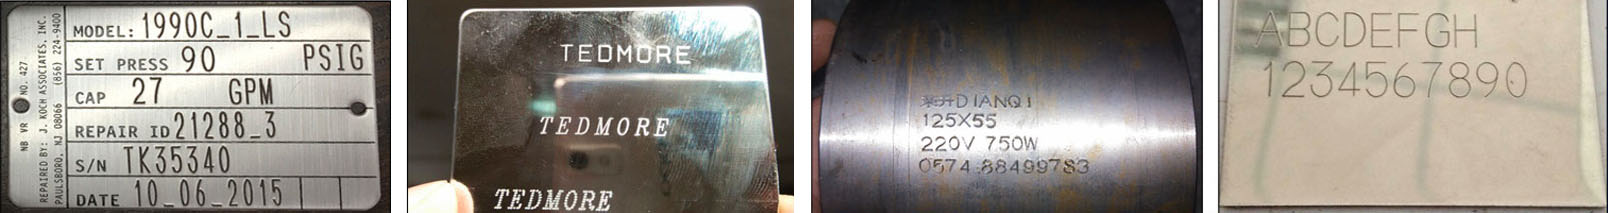 Dot peen marking machine sa stainless steel nga mga solusyon sa materyal